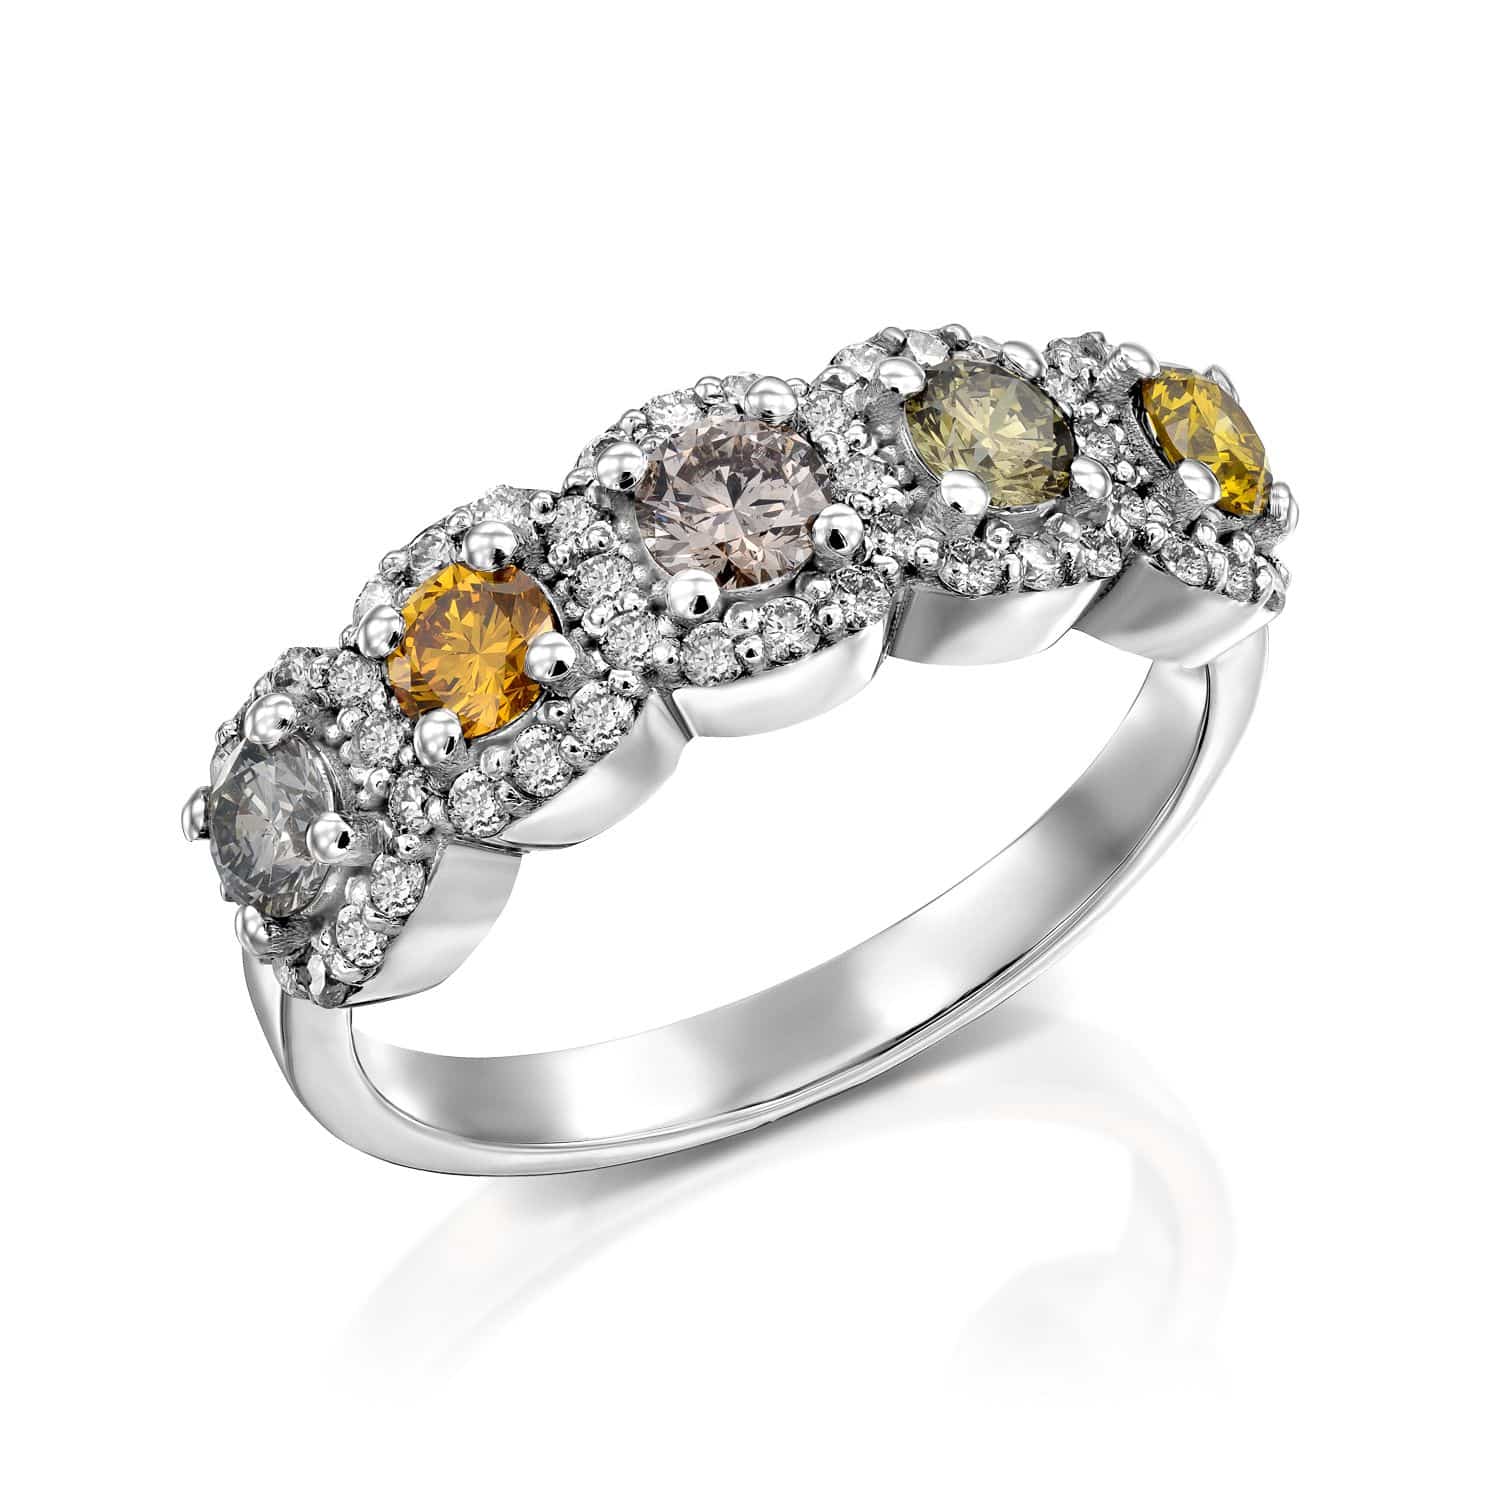 טבעת יהלומים דגם ביאנקה אלגנטית מעוטרת באבני חן לבנות וצהובות מתחלפות מוקפת בהדגשי יהלומים קטנים יותר.